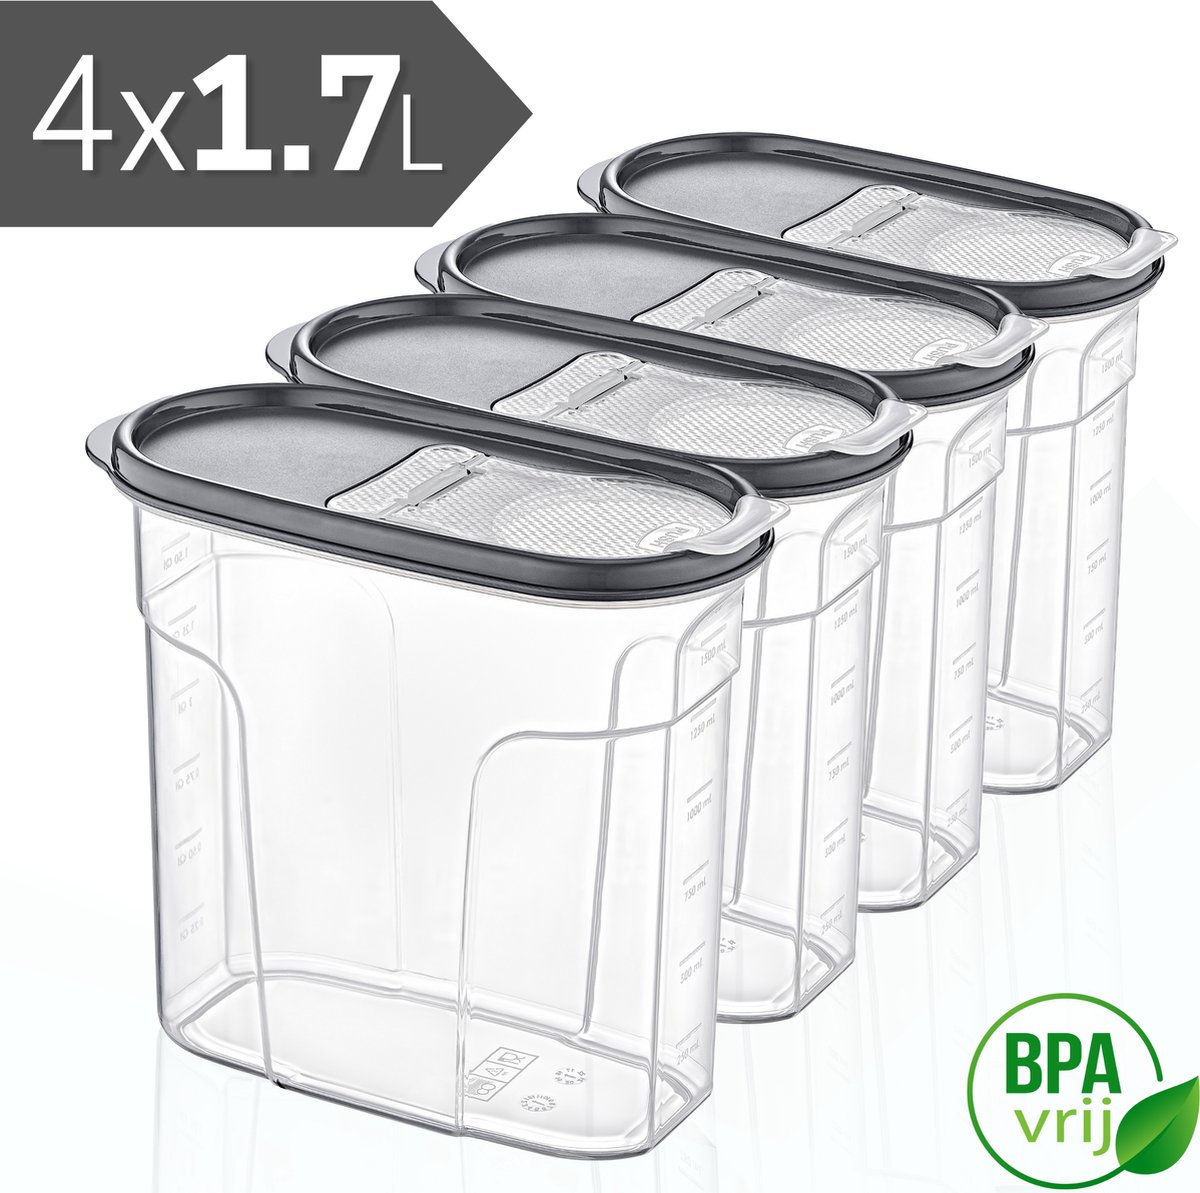 Voorraadpotten Set van 4 - 4x1.7L met grijze deksel Voorraadbussen - Vershouddoos - 4 Stuks - BPA vrij - Kunststof